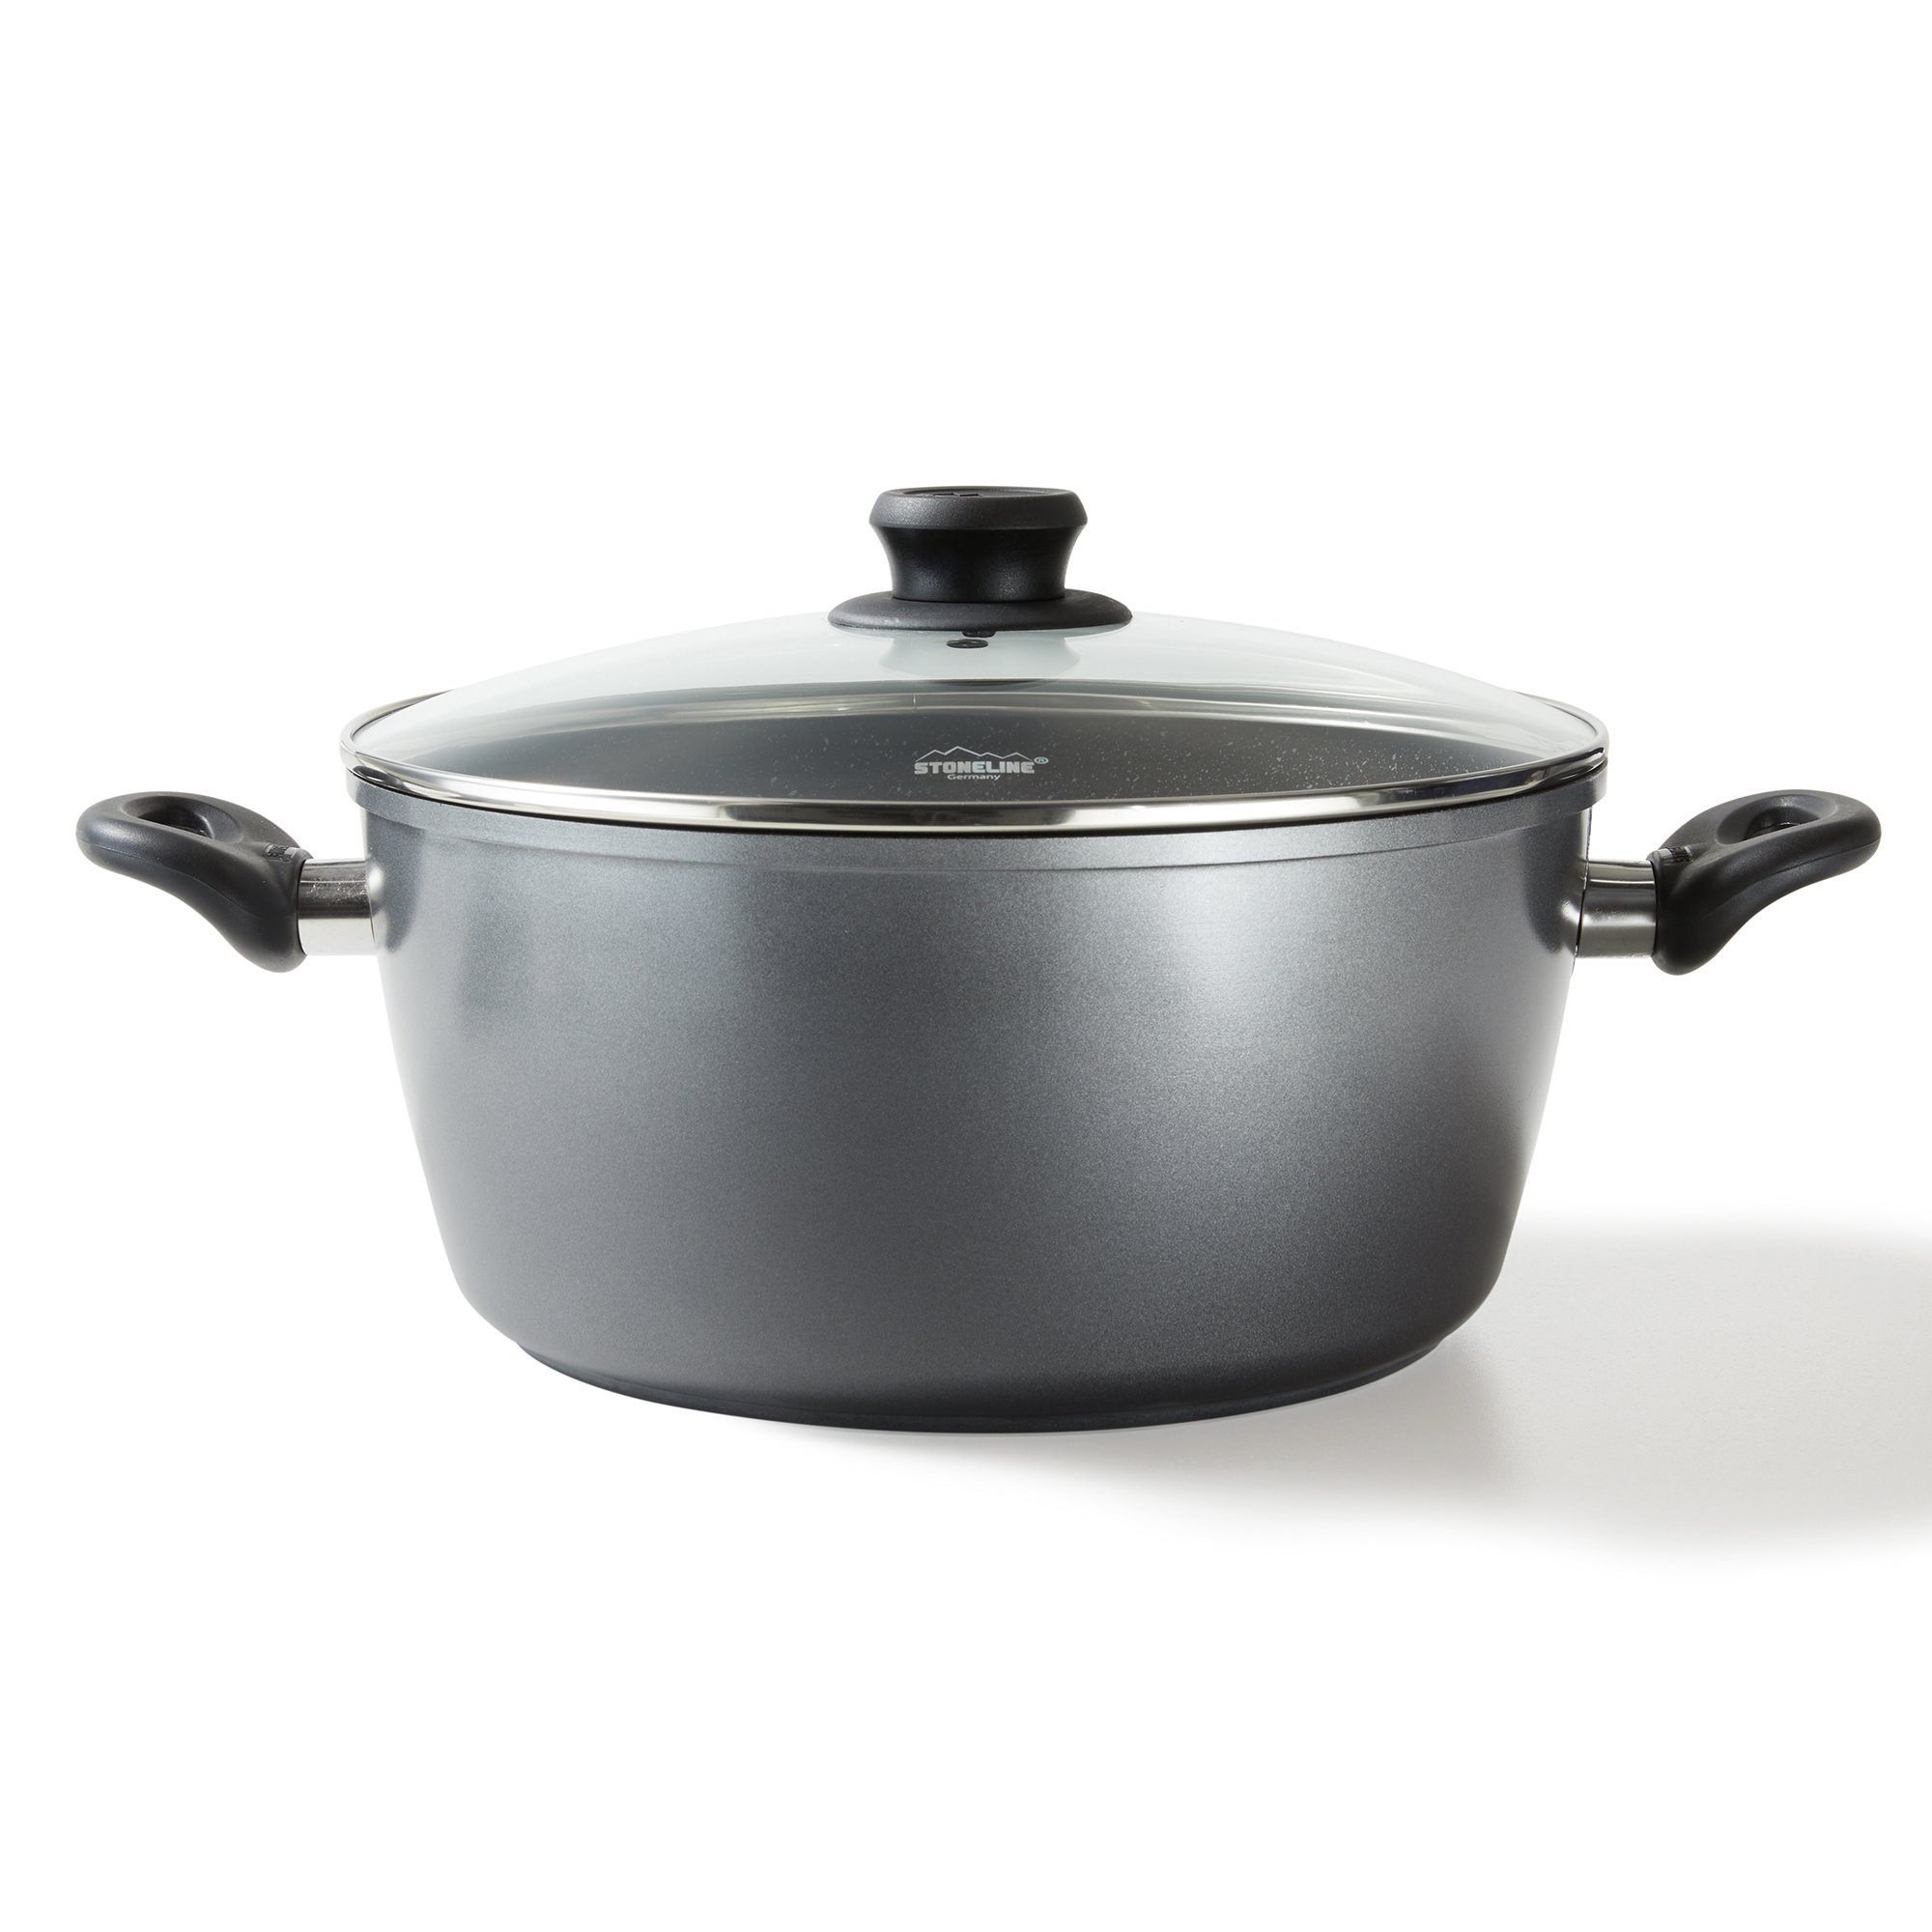 STONELINE® XXXL Cooking Pot 32 cm, with Lid, Large Non-Stick Pot | CLASSIC